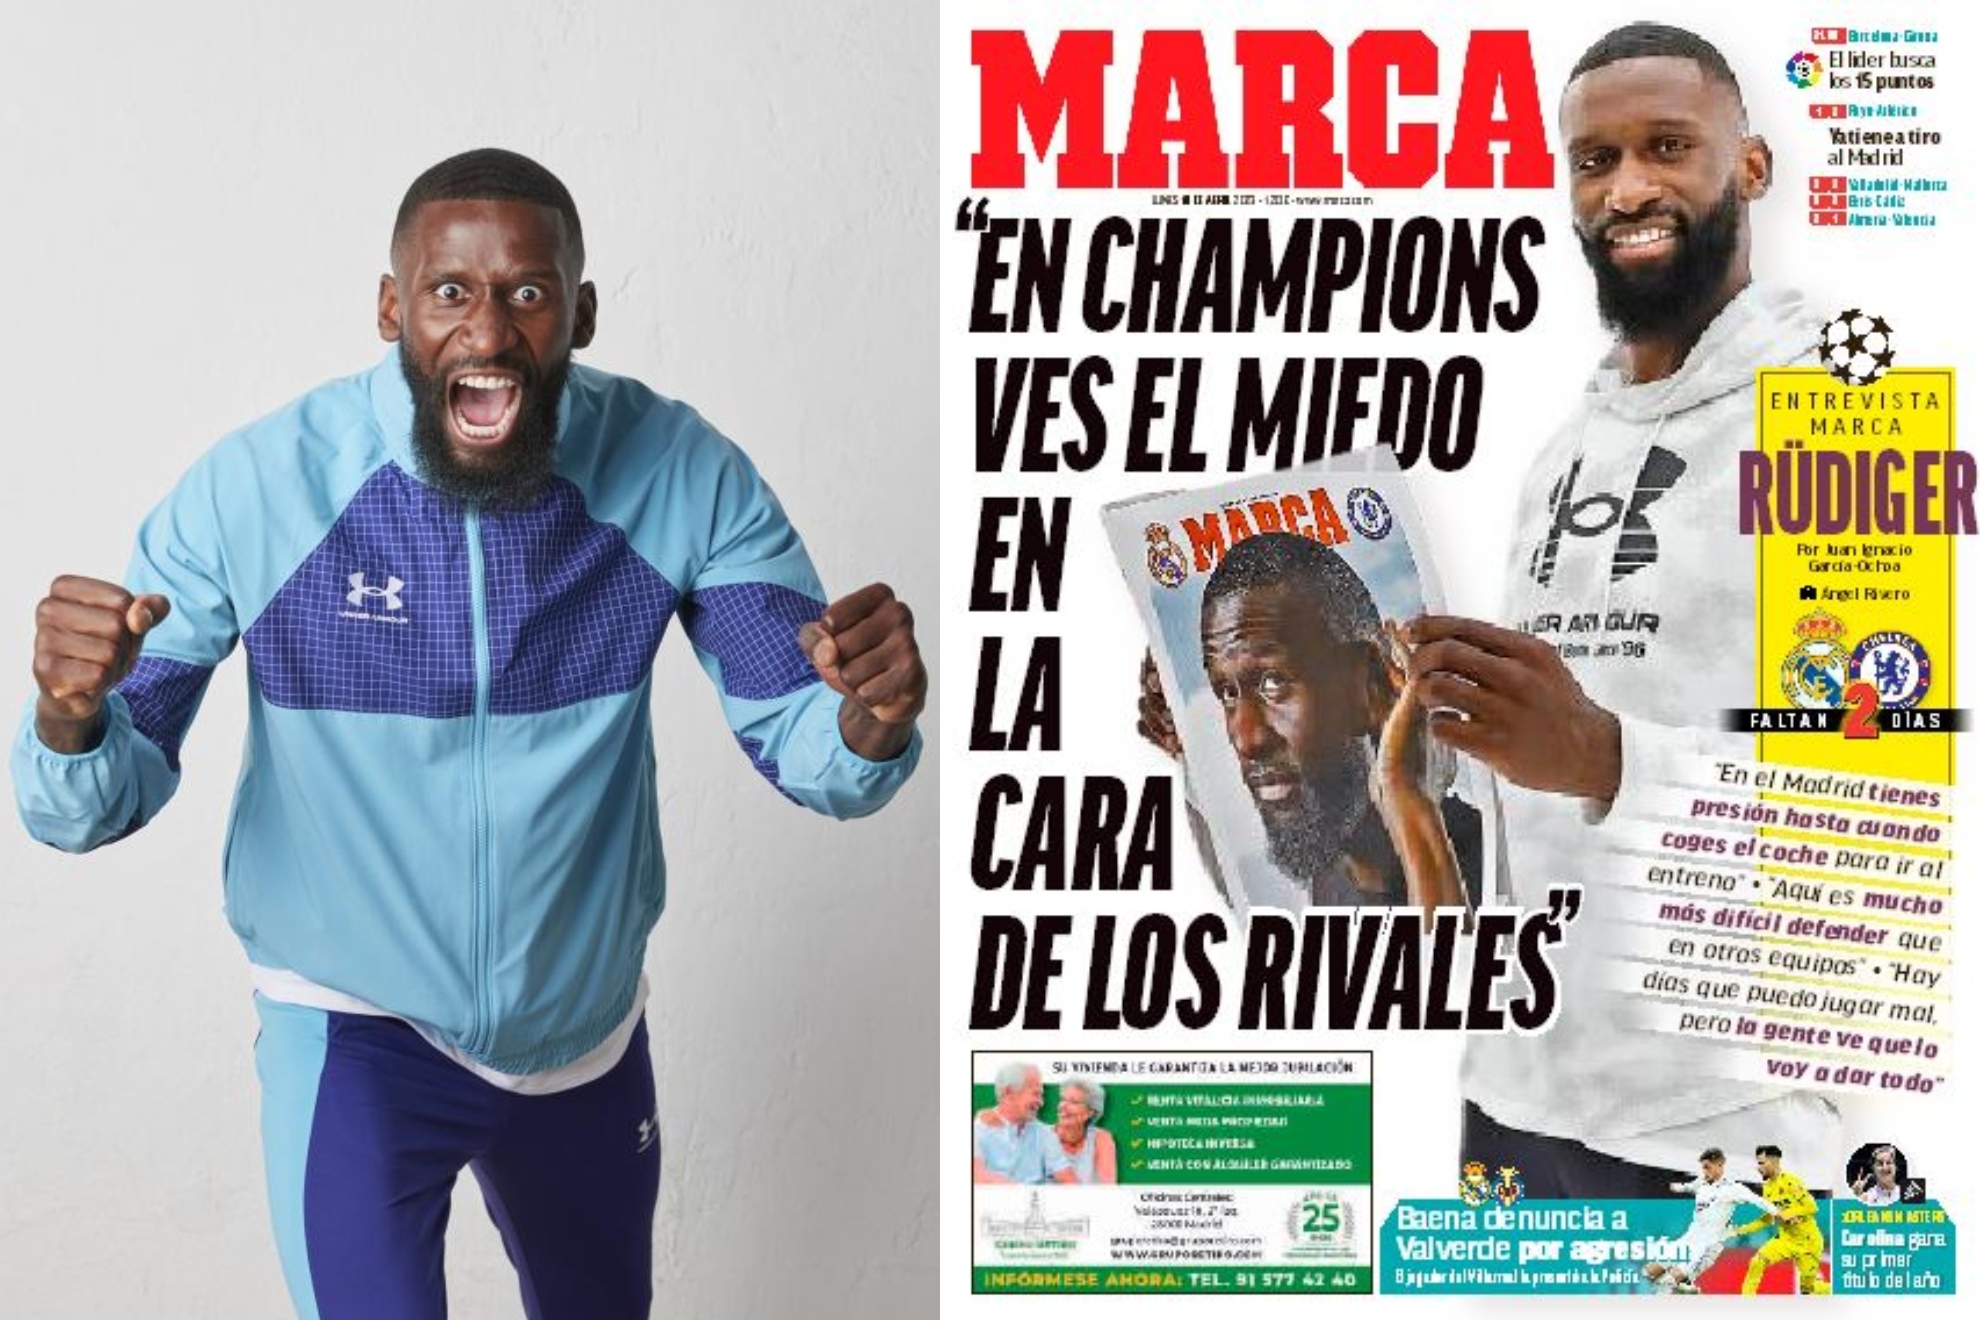 Entrevista MARCA con Rdiger: "En Champions ves el miedo en la cara de los rivales"